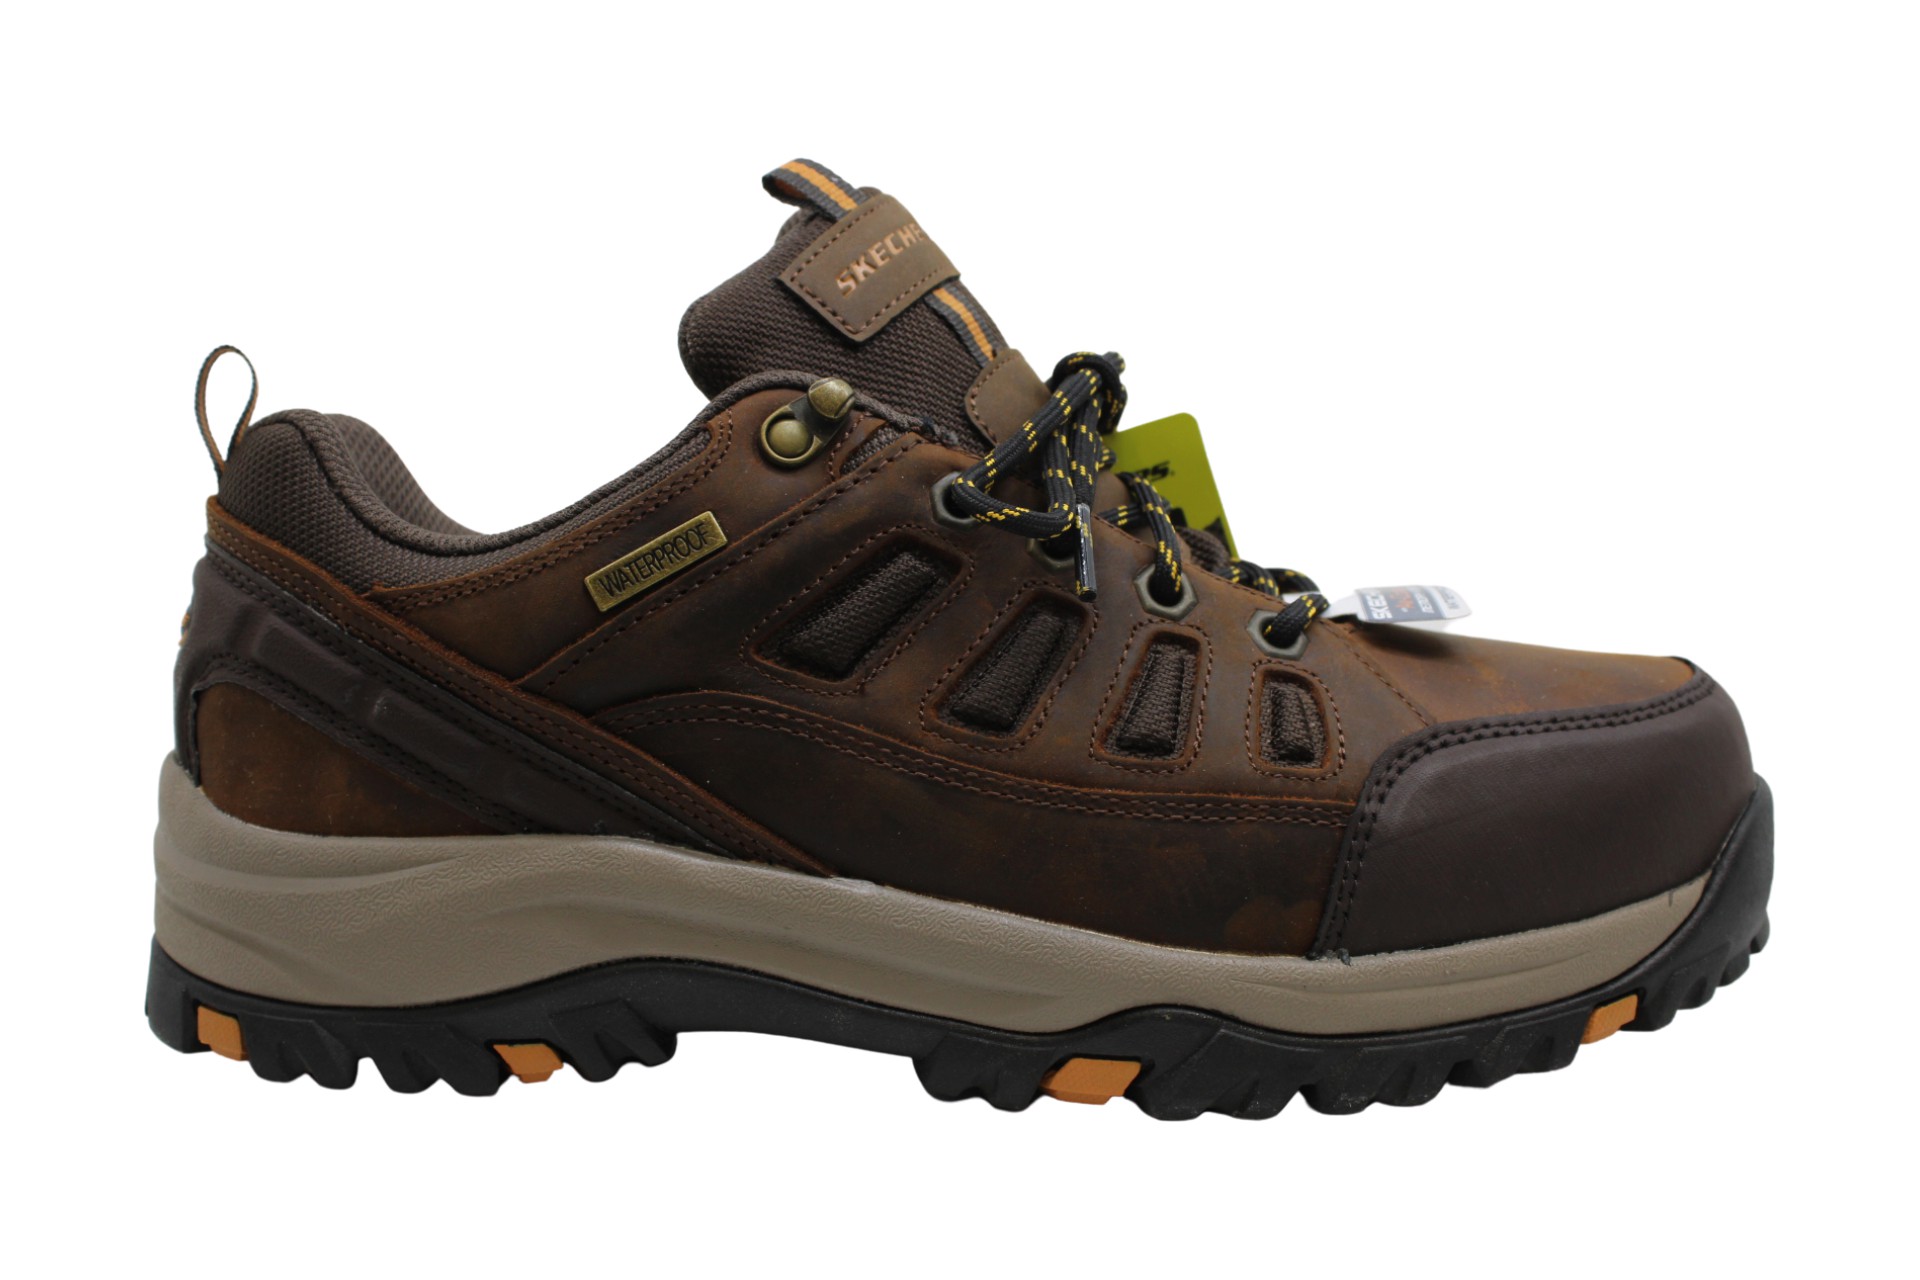 Skechers Men's Shoes Relment Semego Leather Cap Toe Ankle, Dkbr, Size ...